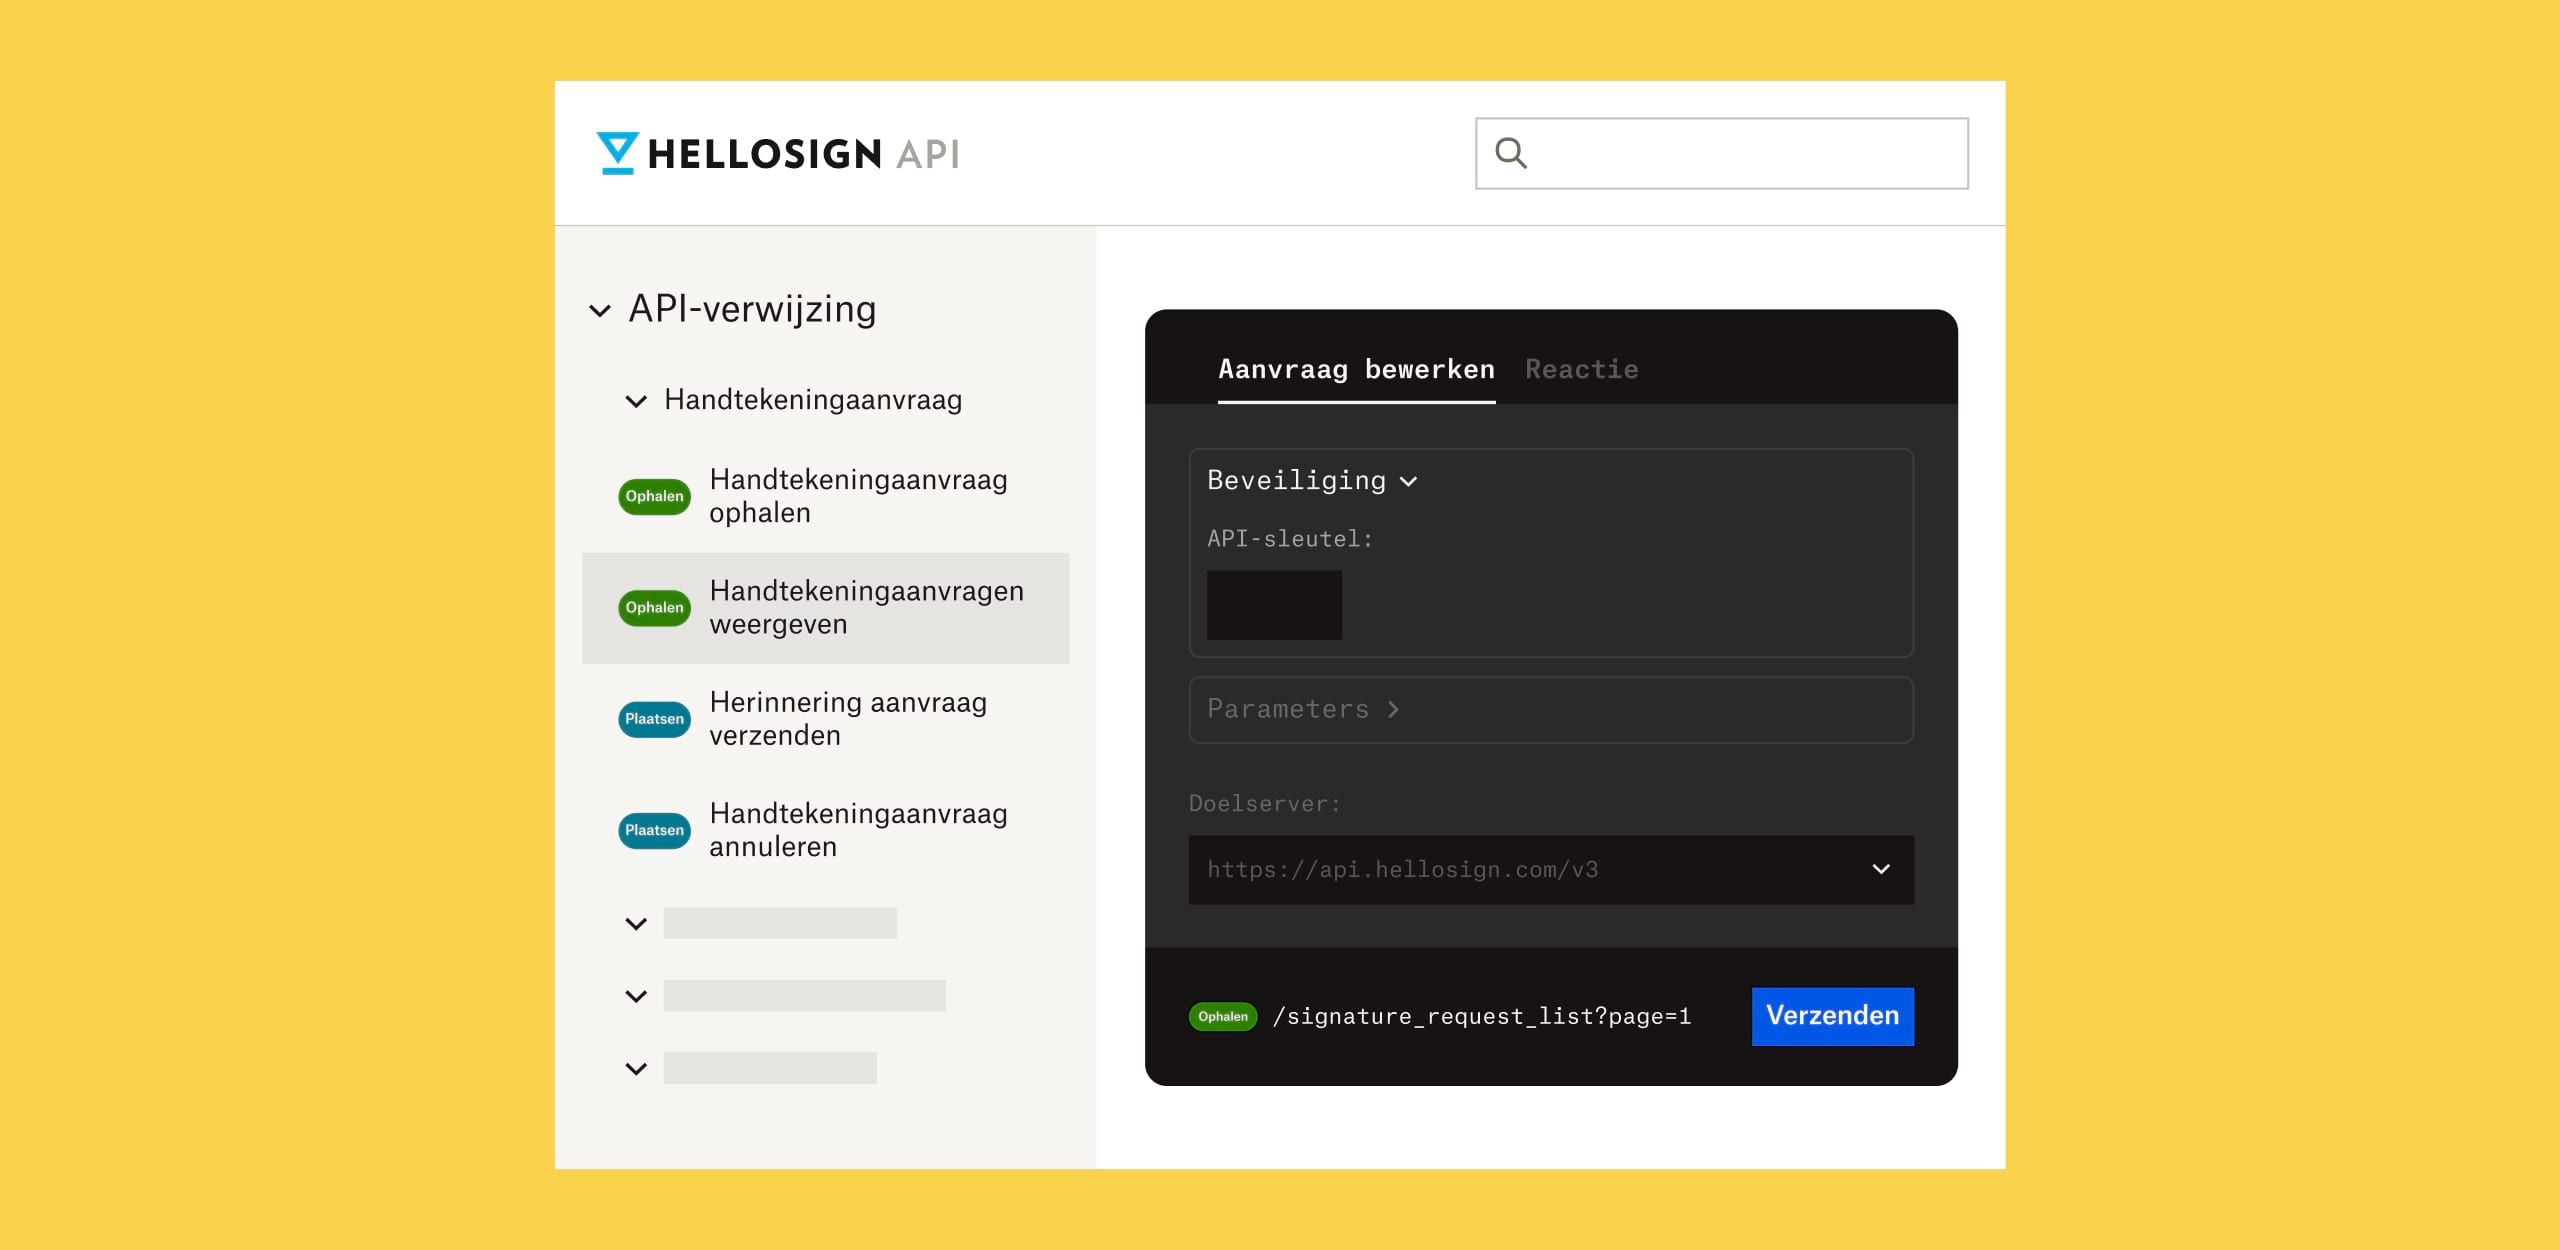 Het HelloSign API-referentiescherm met vervaagde witte tekst op een zwarte achtergrond